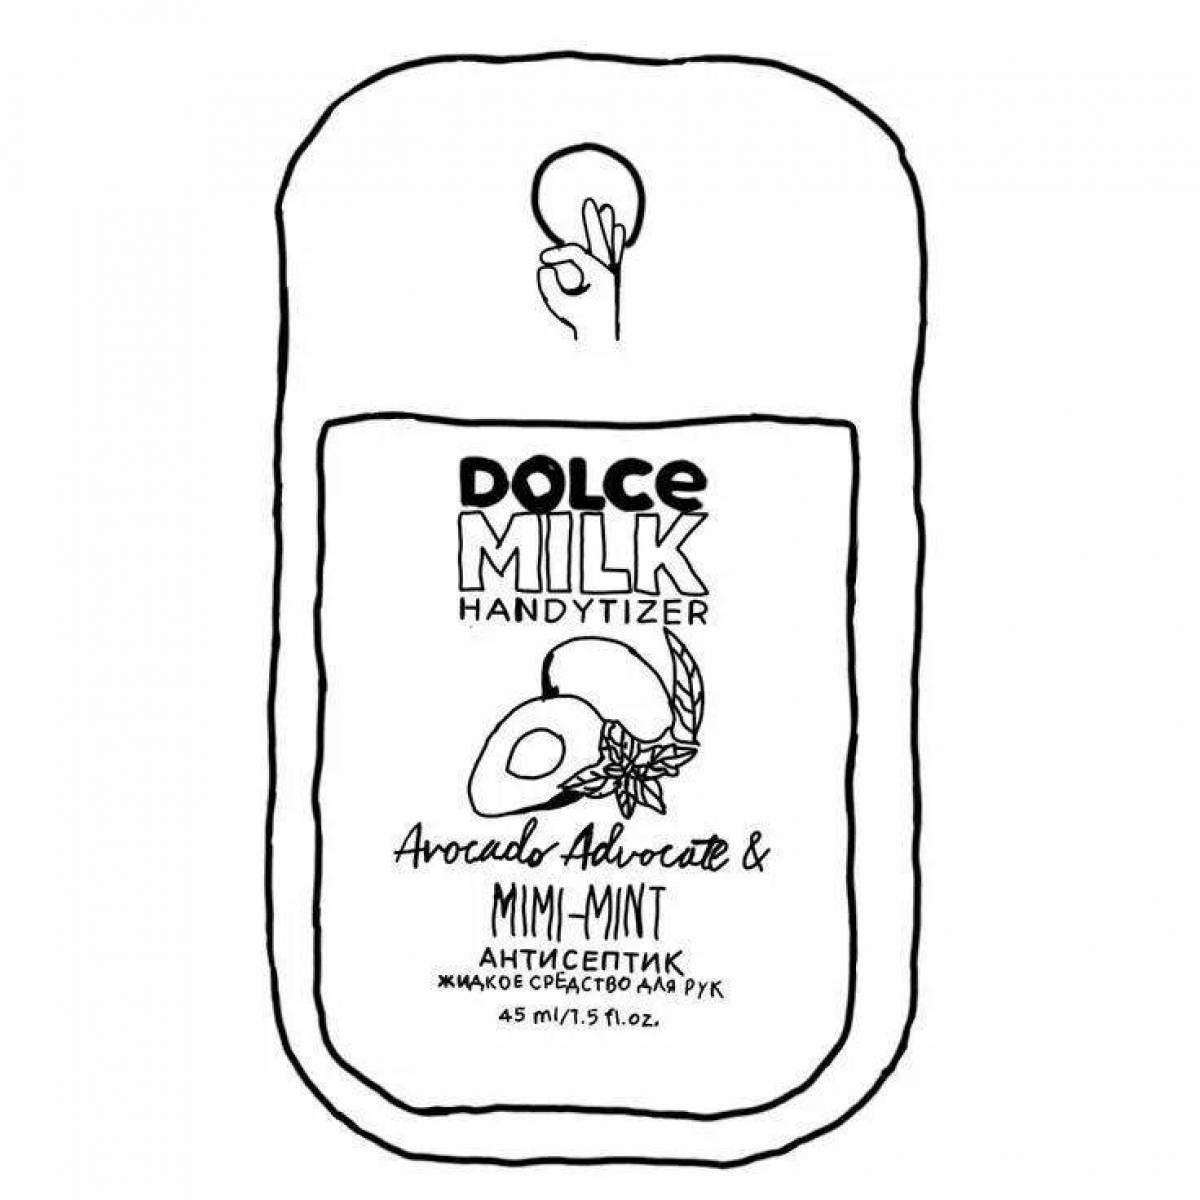 Dolce milk антисептик рисунок